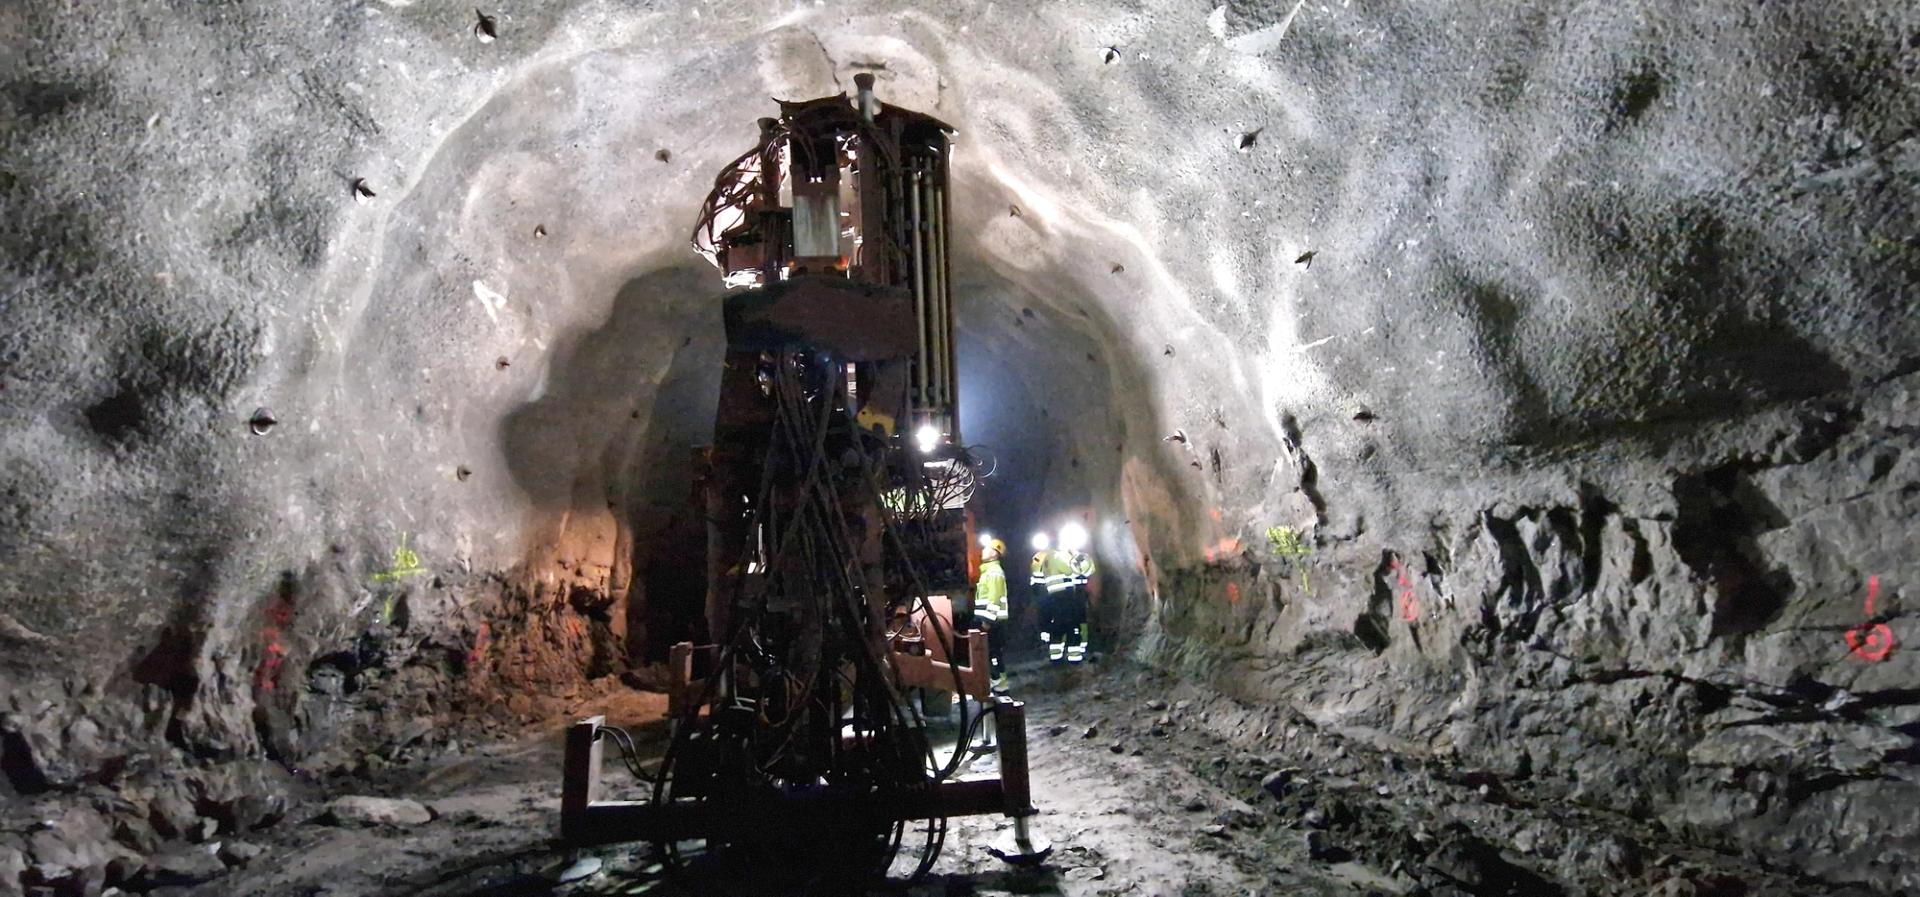 Drilling rig underground